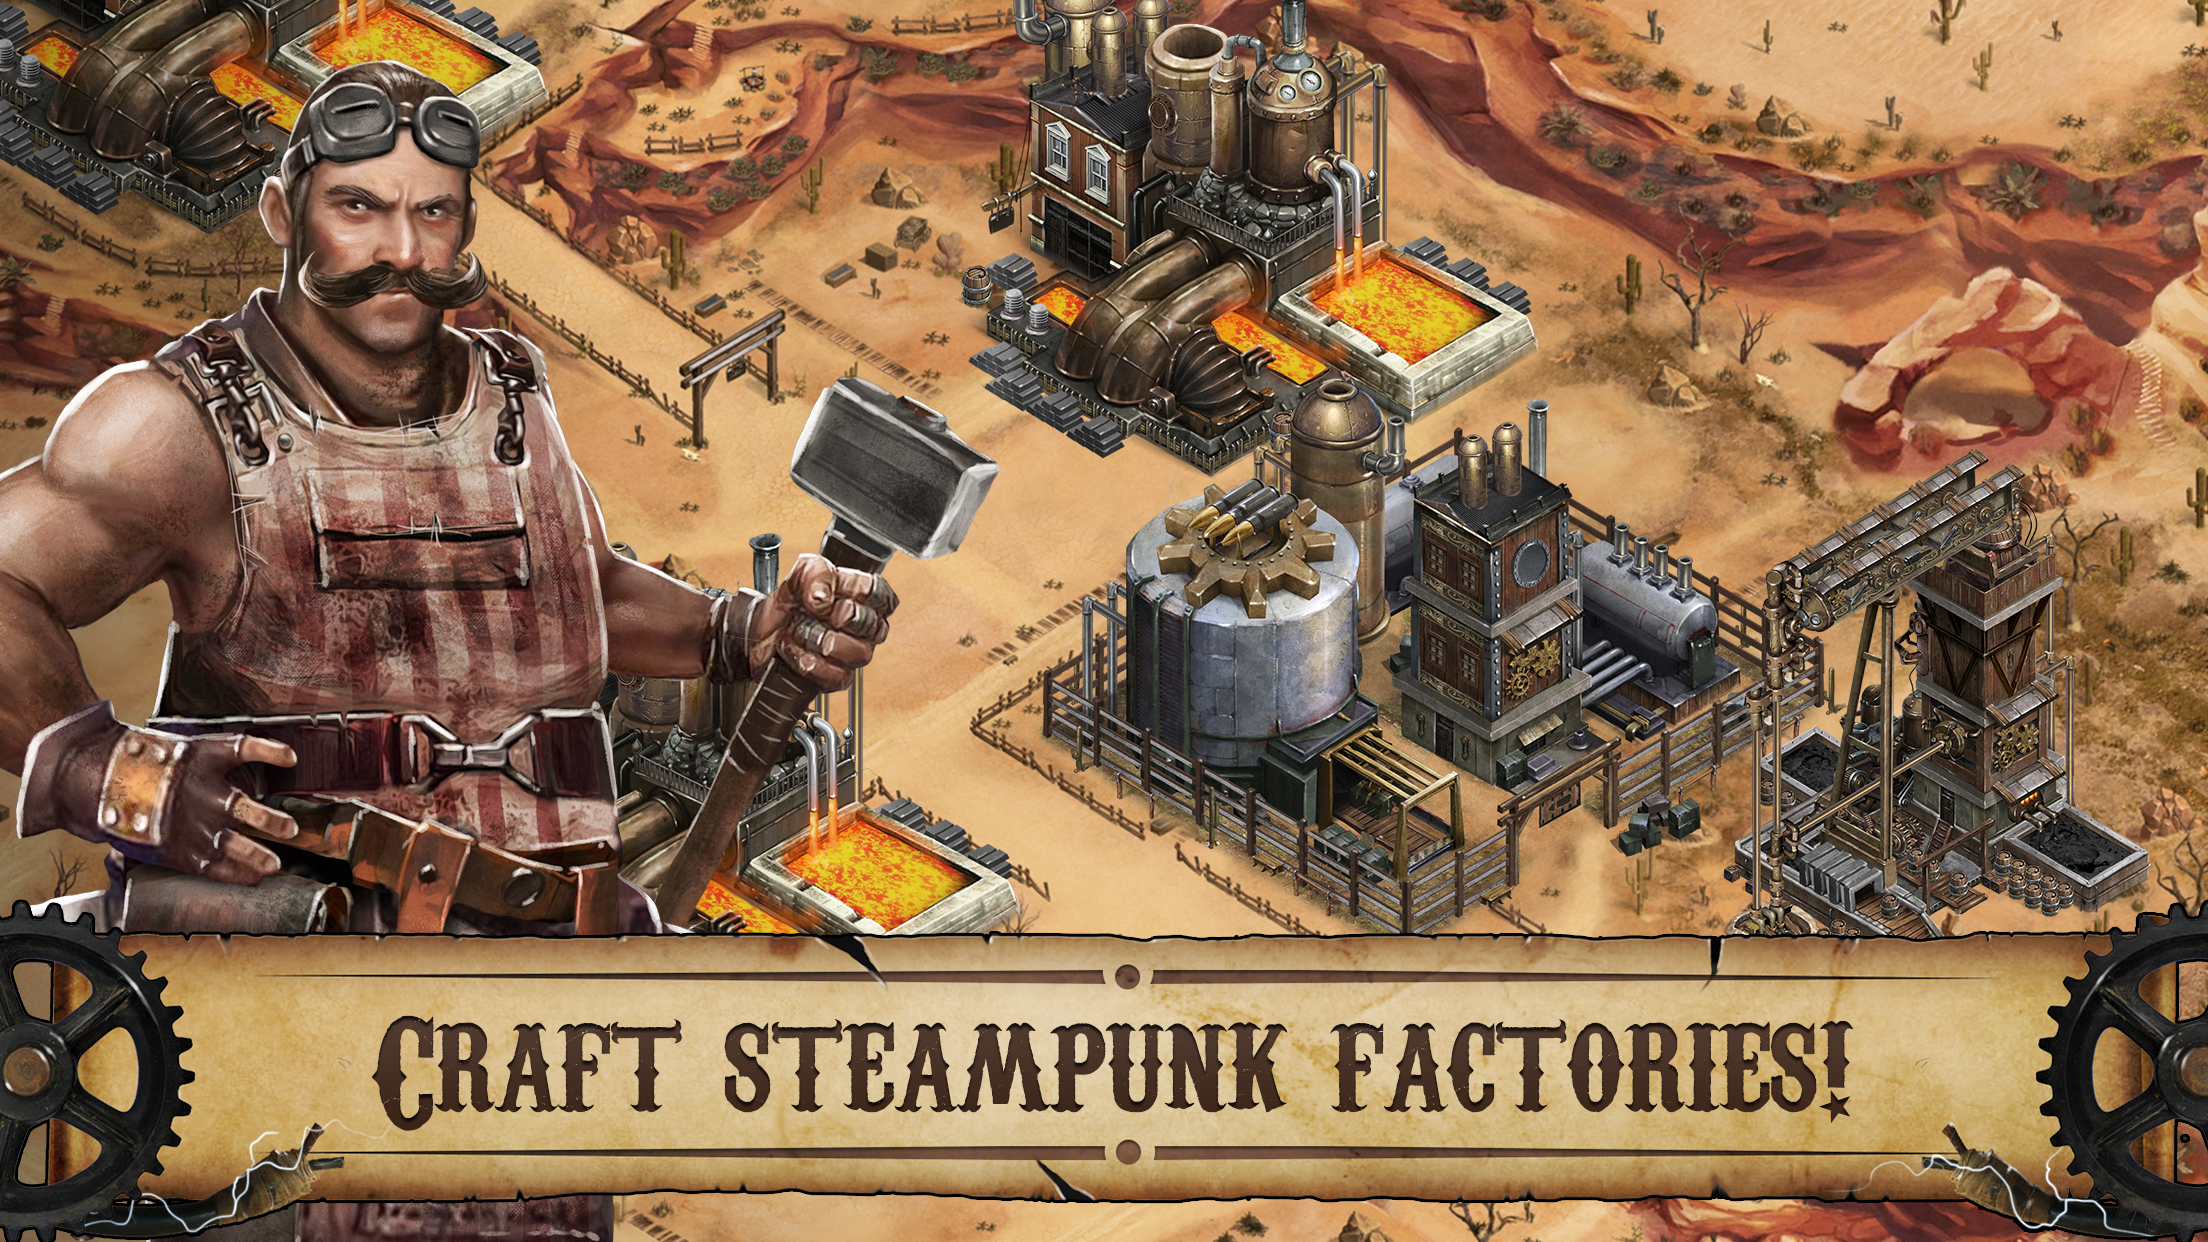 Wild West: Steampunk Alliances screenshot game